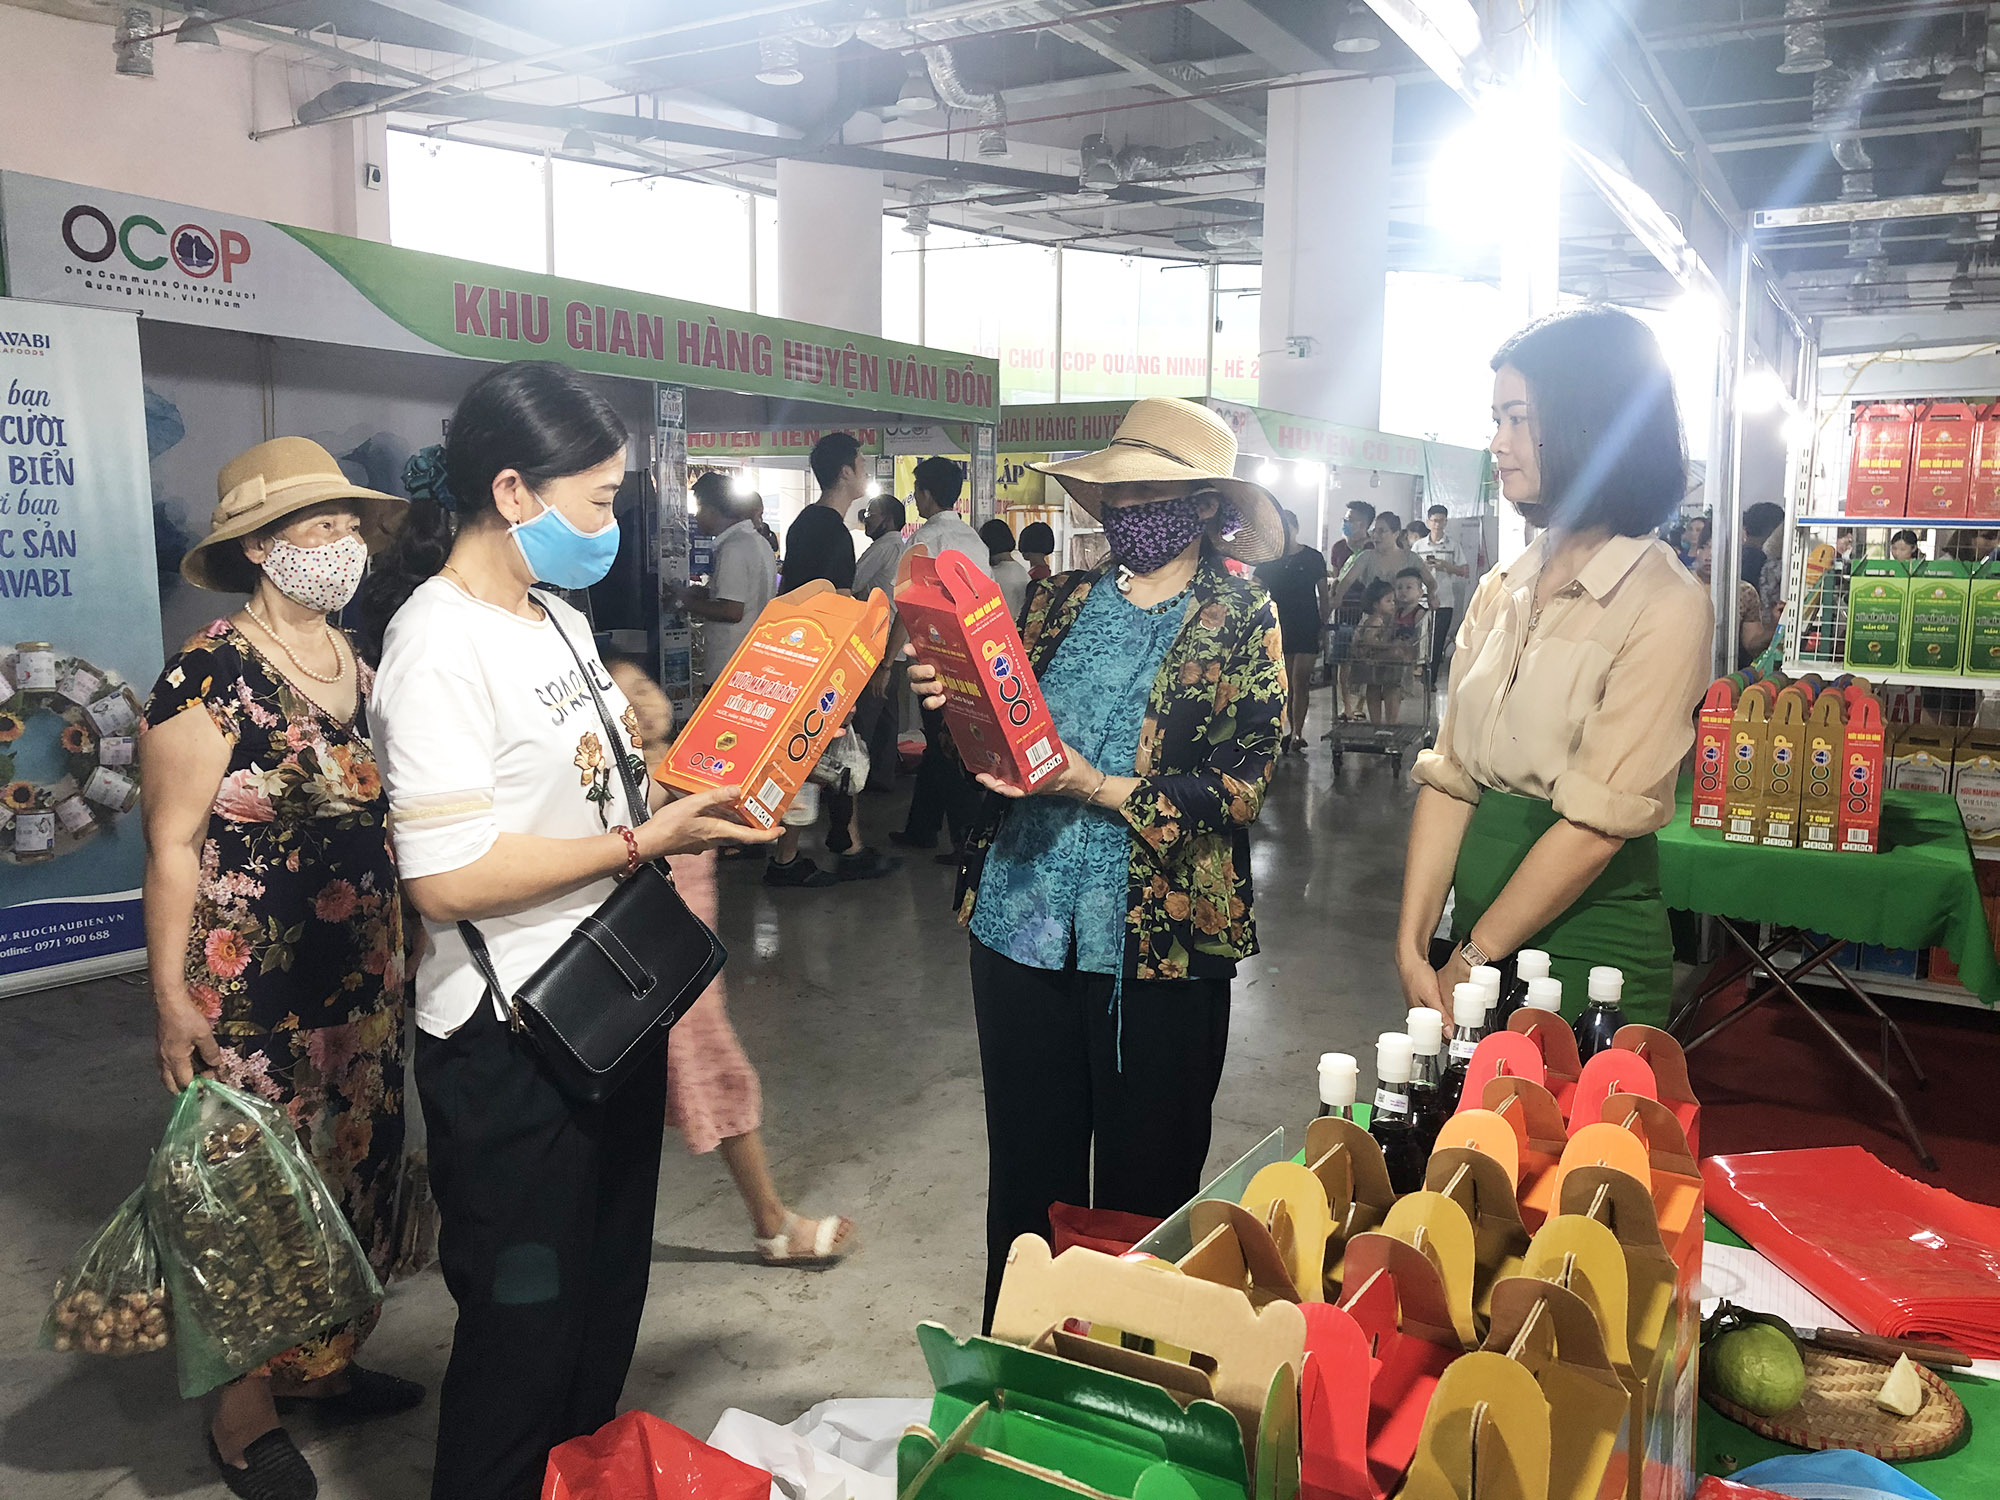 Các sản phẩm của tỉnh Quảng Ninh được bày bán tại Hội chợ OCOP - Hè 2020.